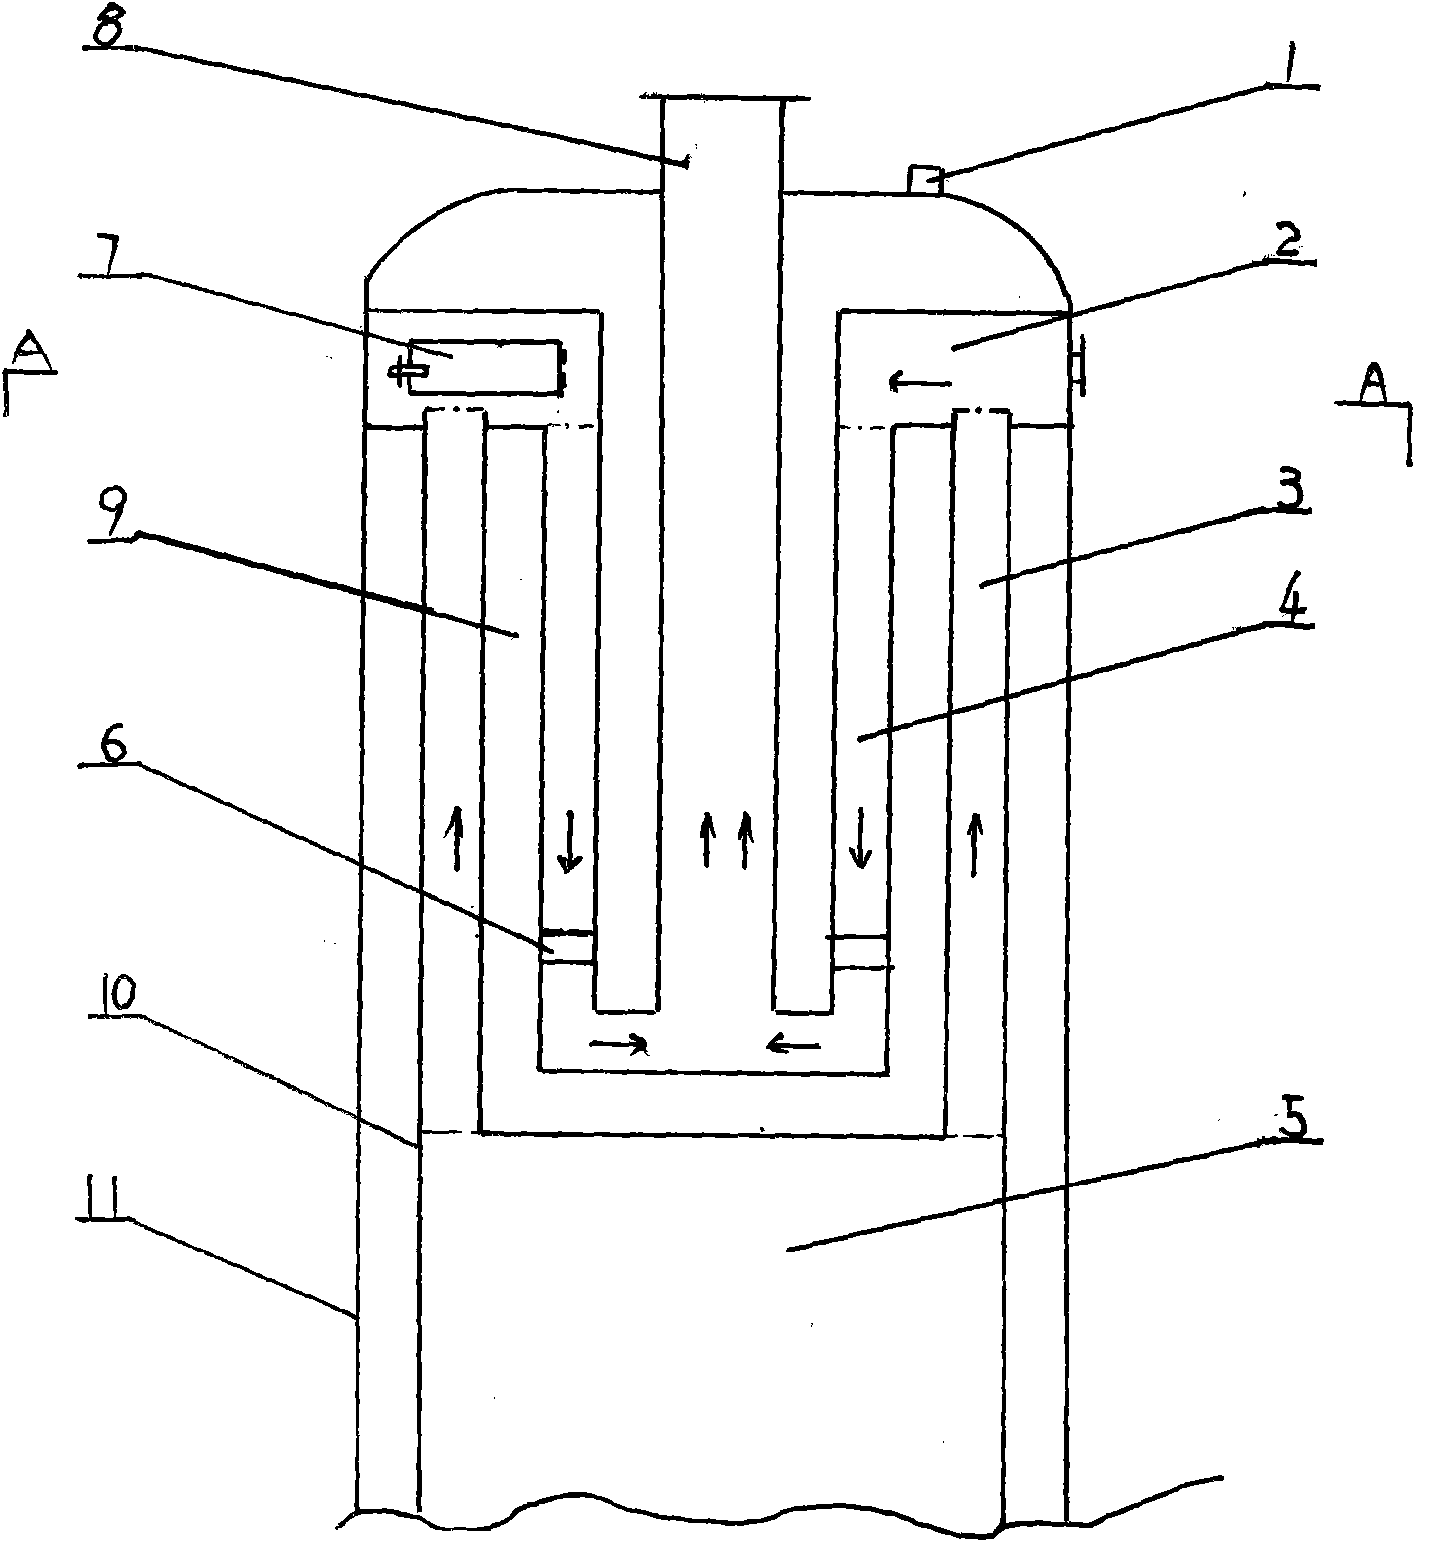 Boiler with annular upper furnace body deashing chamber